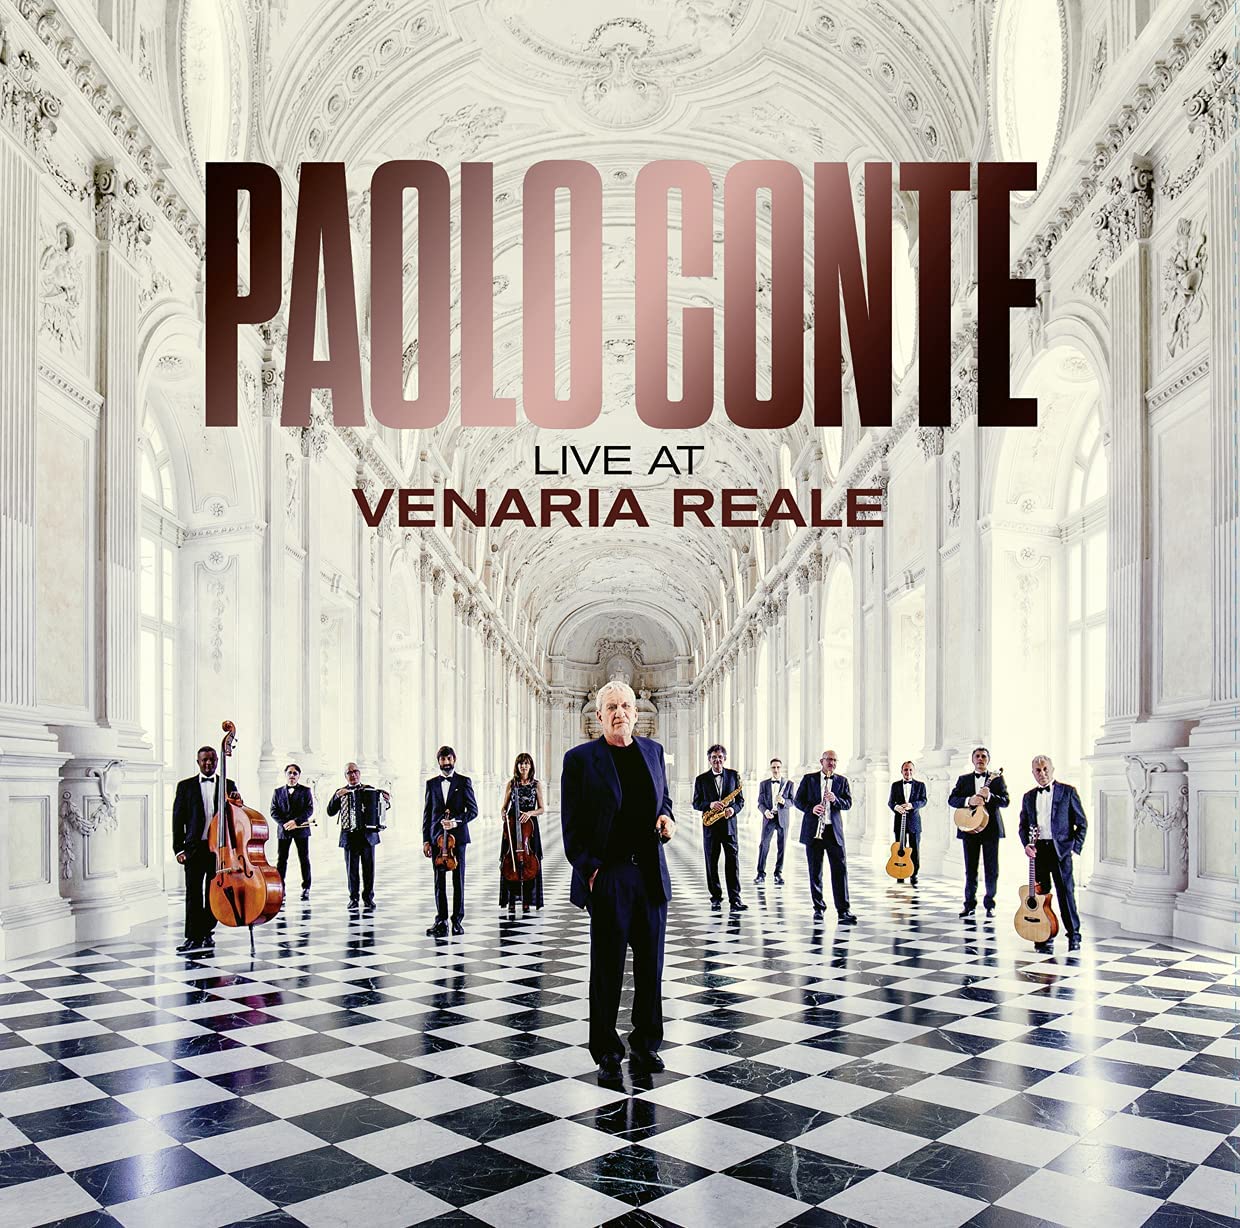 Copertina Vinile 33 giri Live at Venaria Reale di Paolo Conte